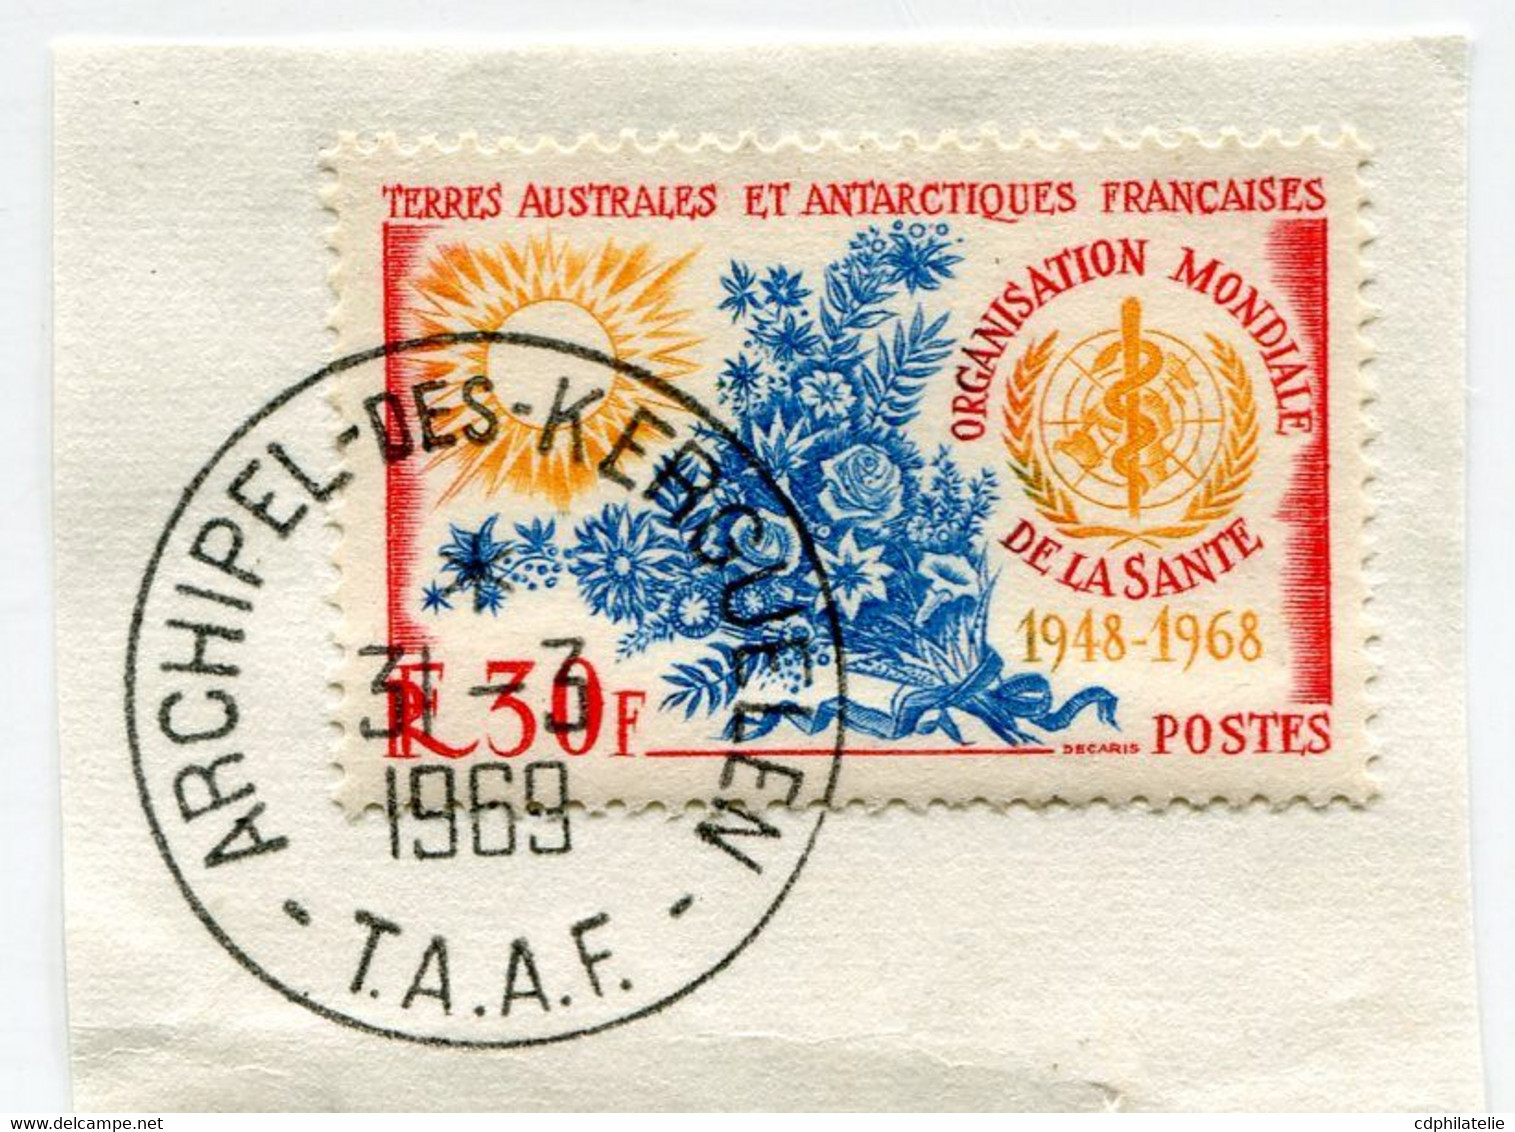 T. A. A. F. N°26 20e ANNIVERSAIRE DE L'ORGANISATION MONDIALE DE LA SANTE OBL. ARCHIPEL-DES-KERGUELEN 31-3-1969 - Used Stamps